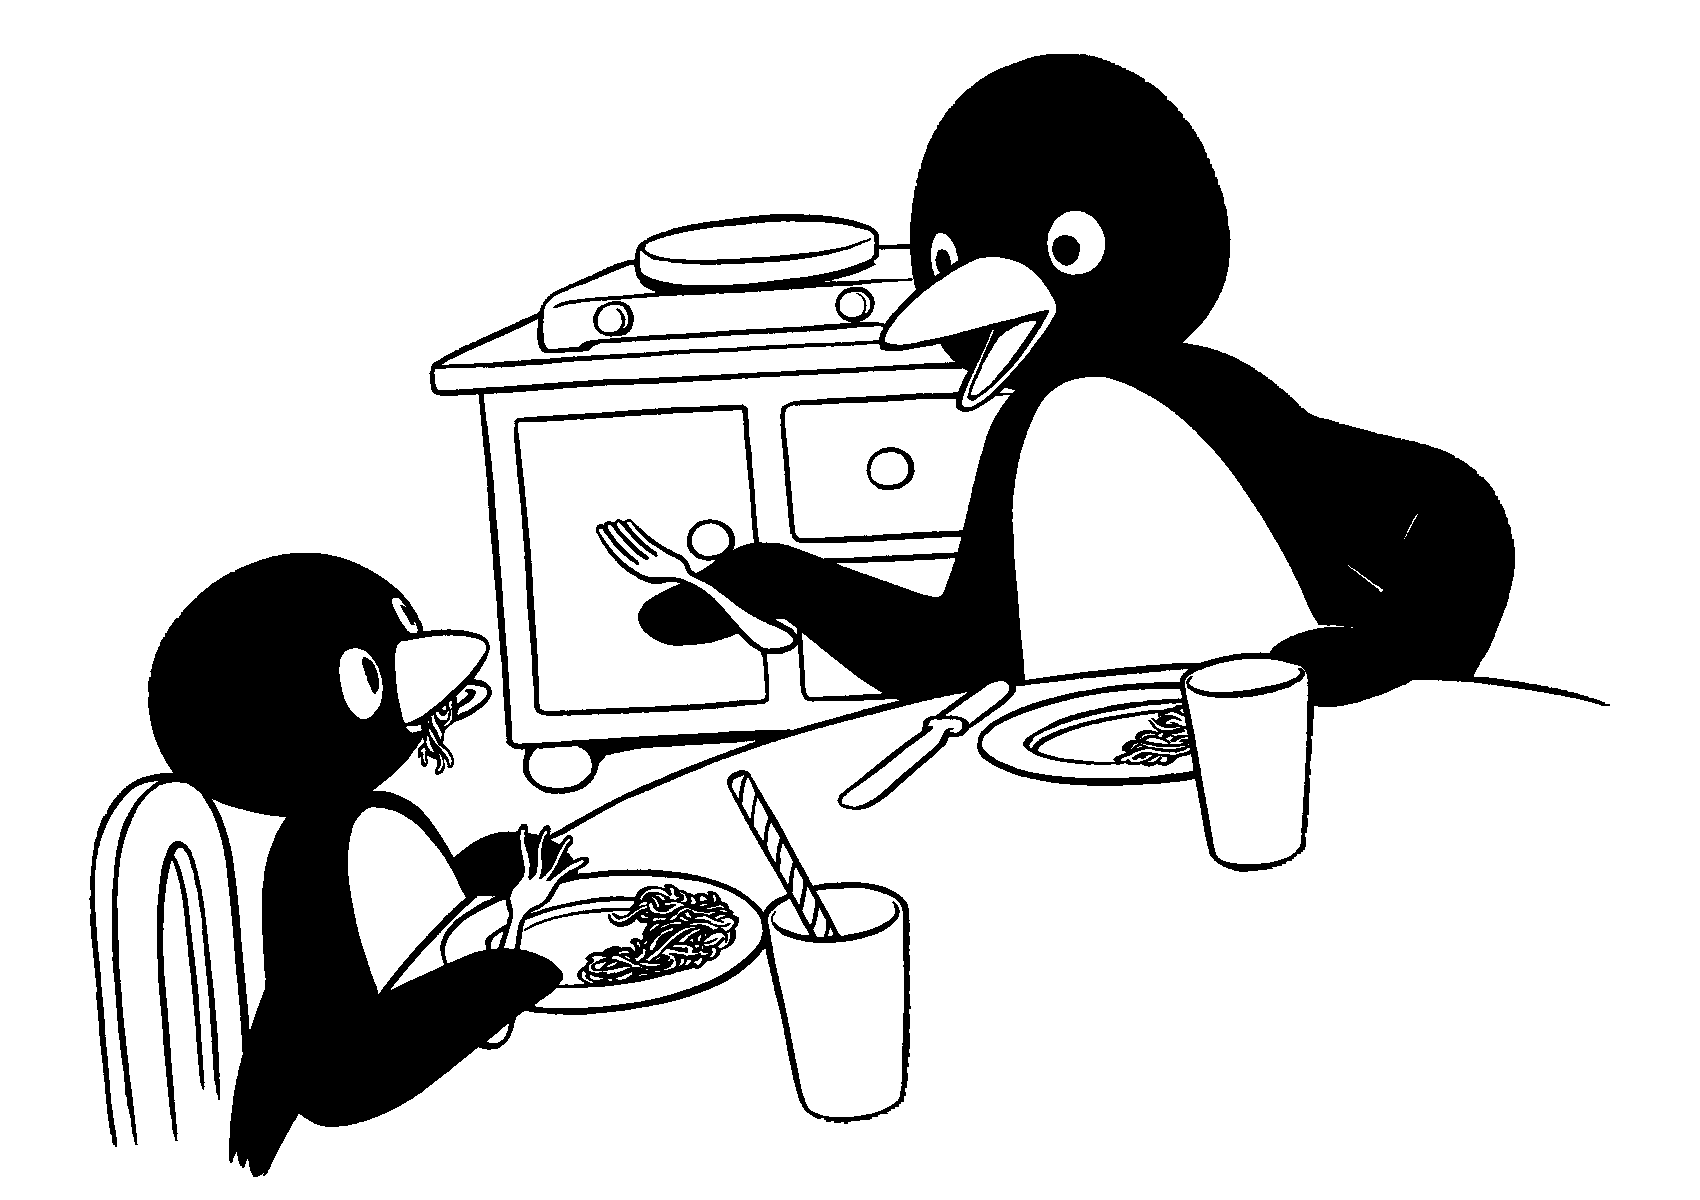 Pingu Coloring Pages - Kidsuki